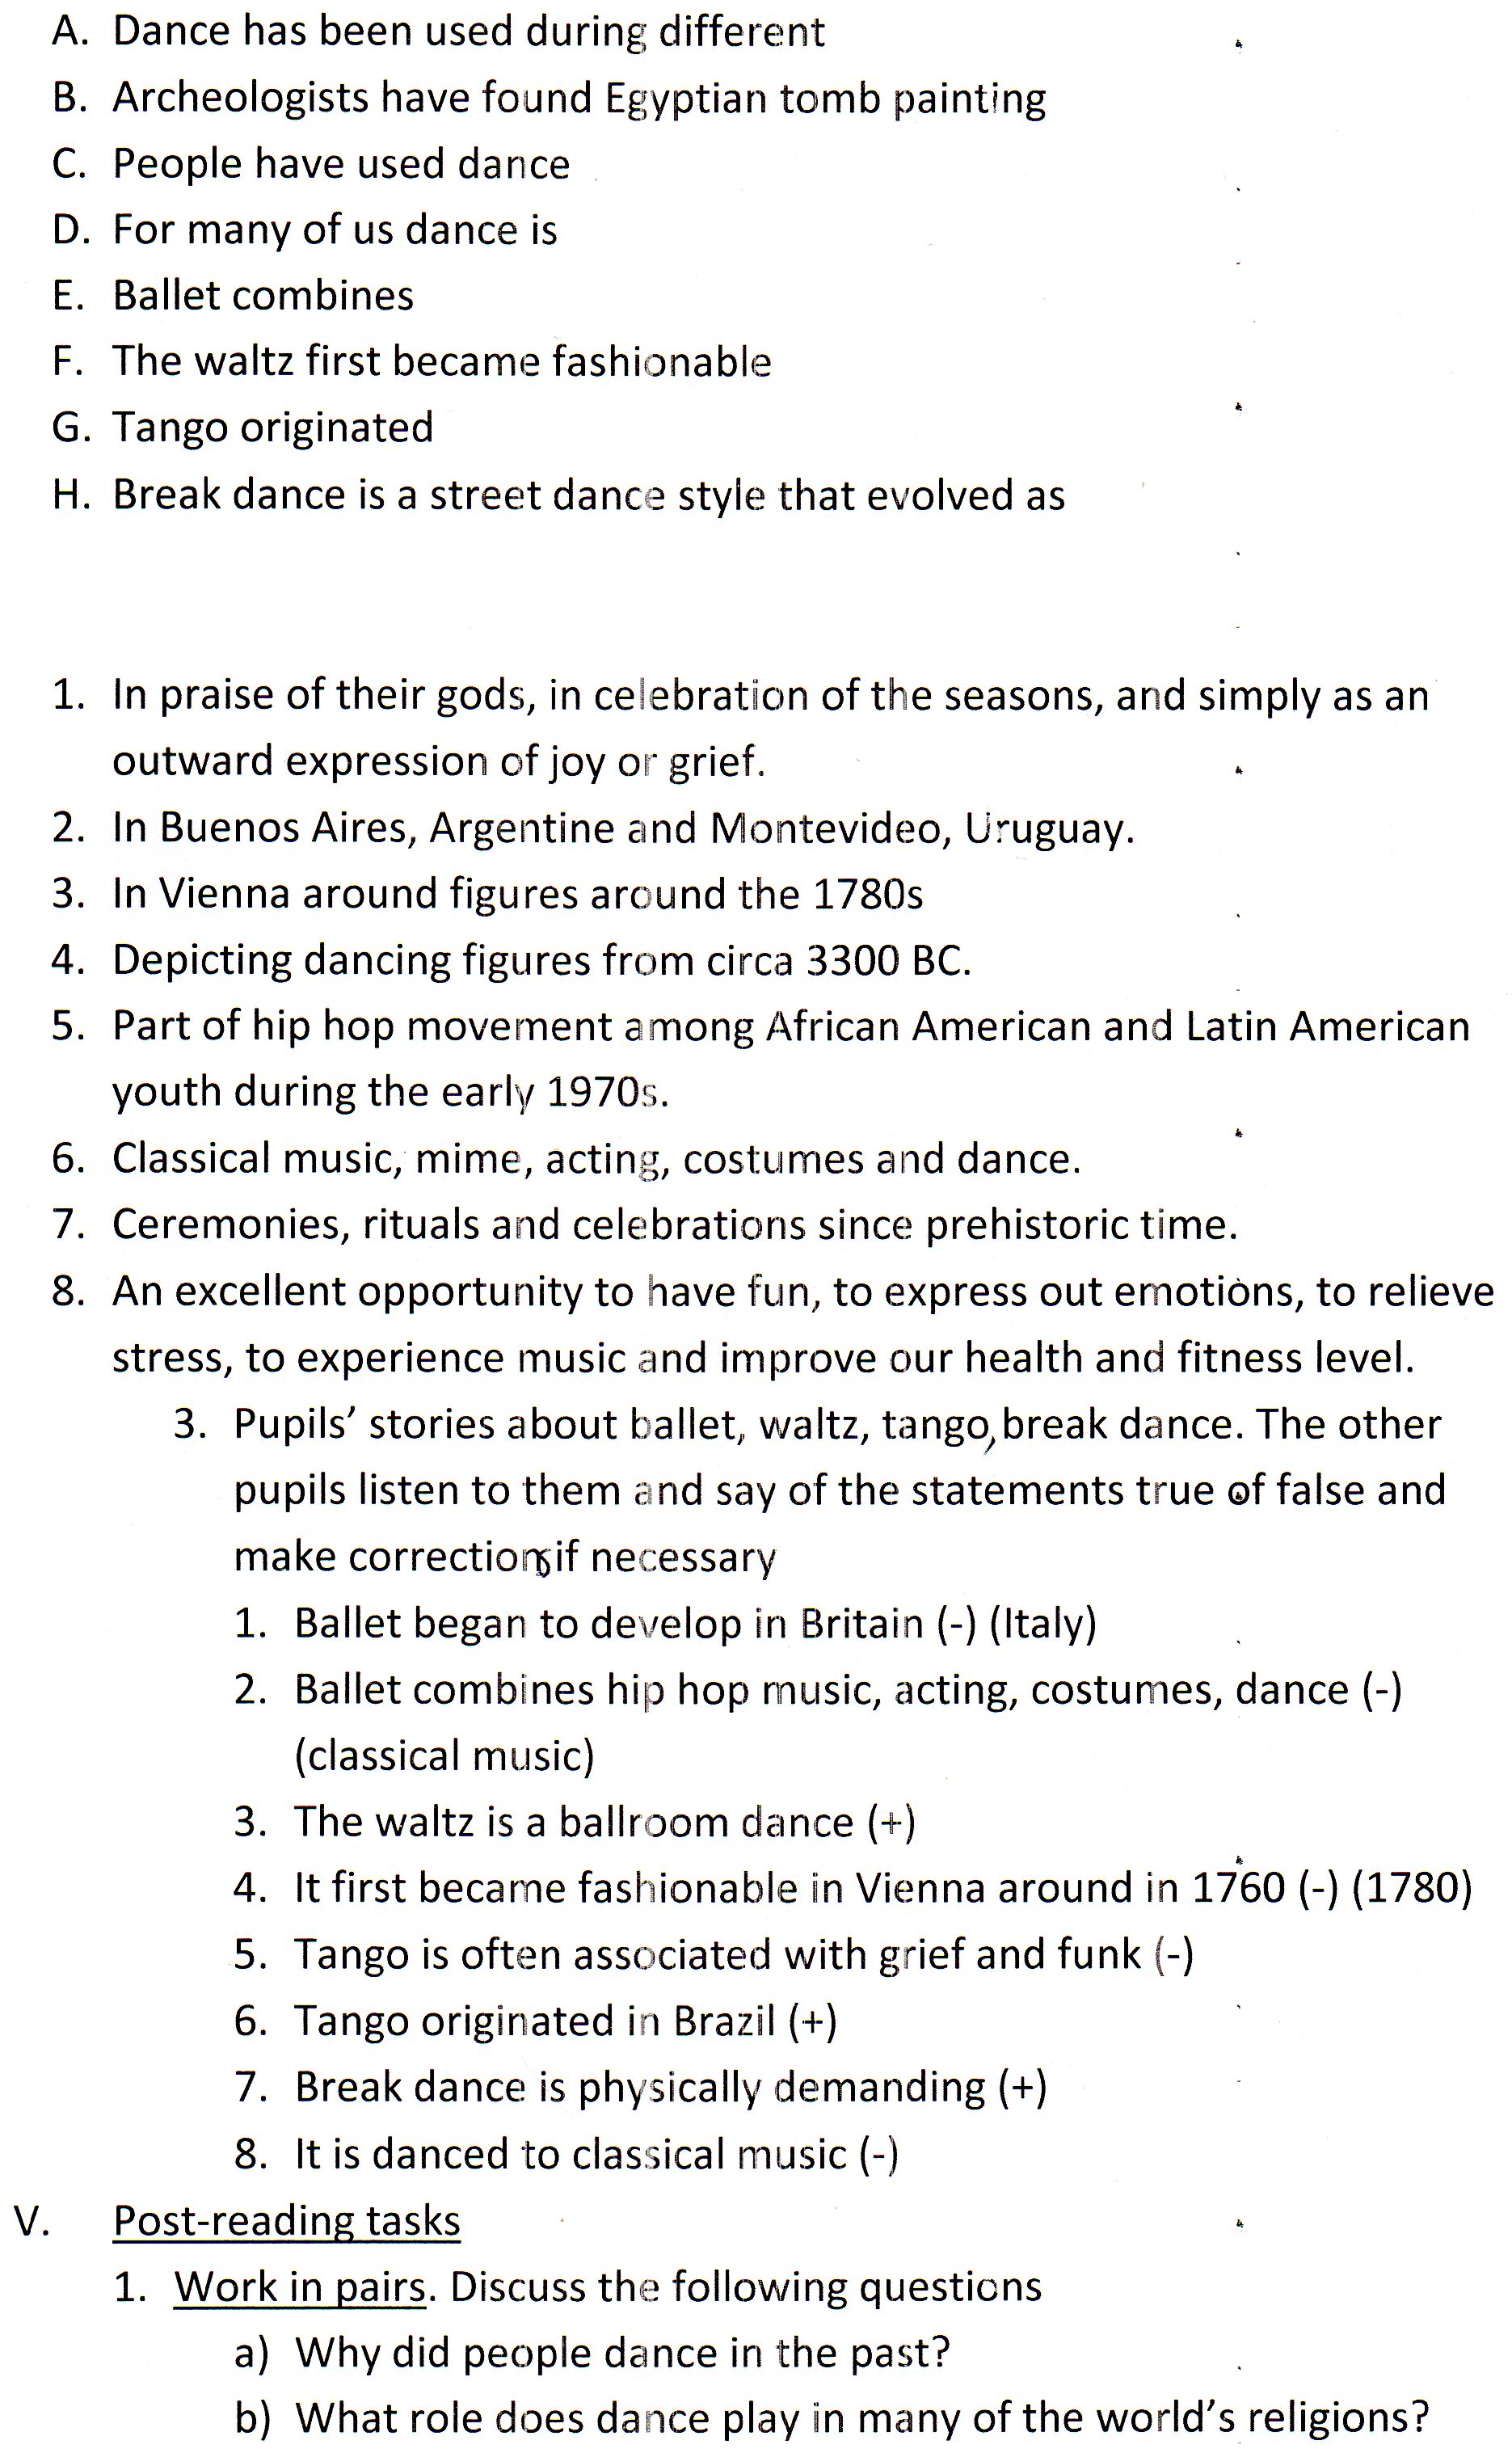 Конспект урока для 10 класса на тему Why do we dance?